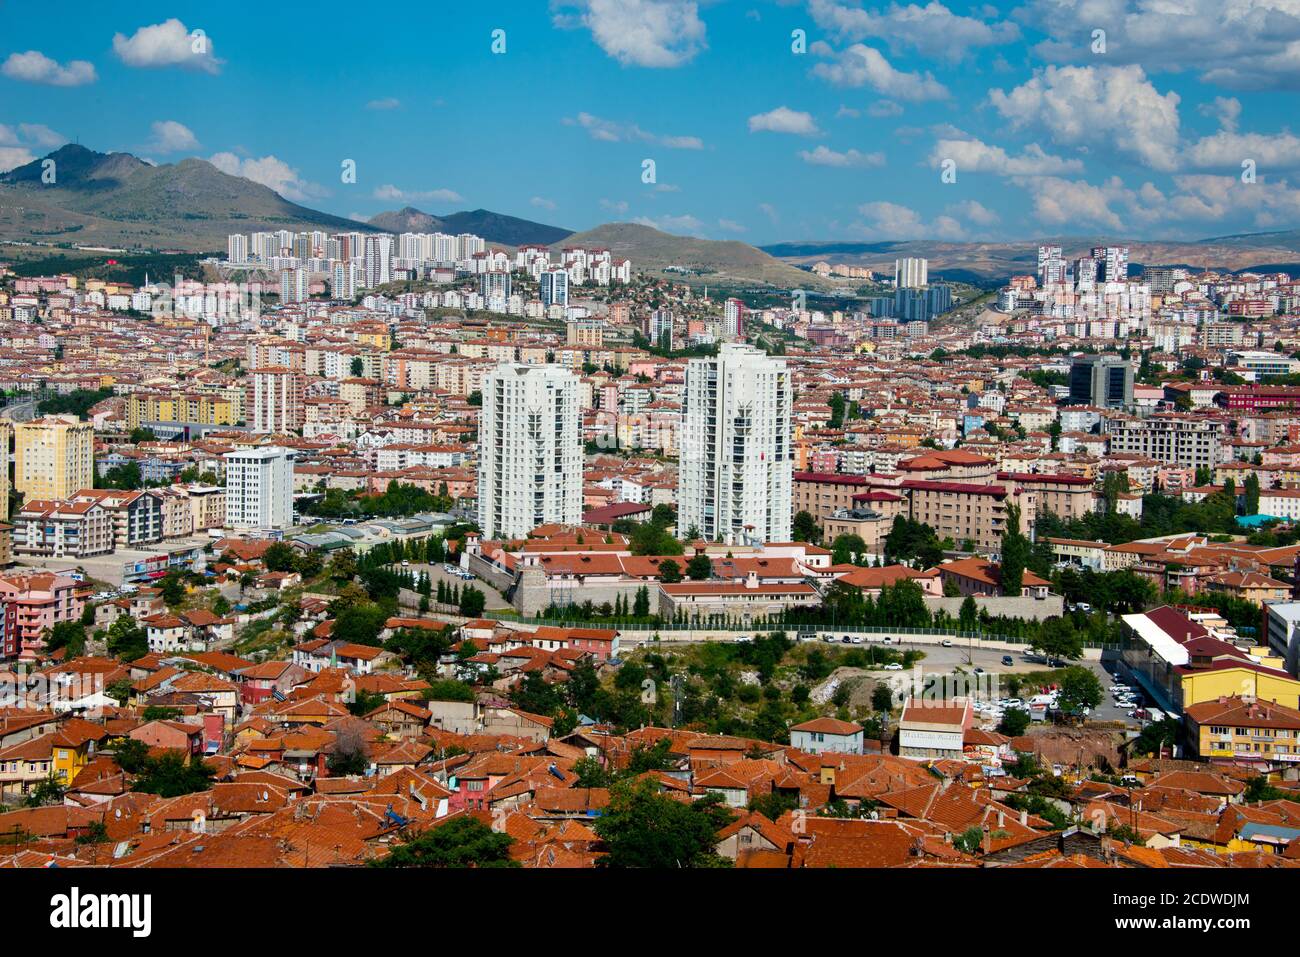 cityscape of turkish capital ankara Stock Photo